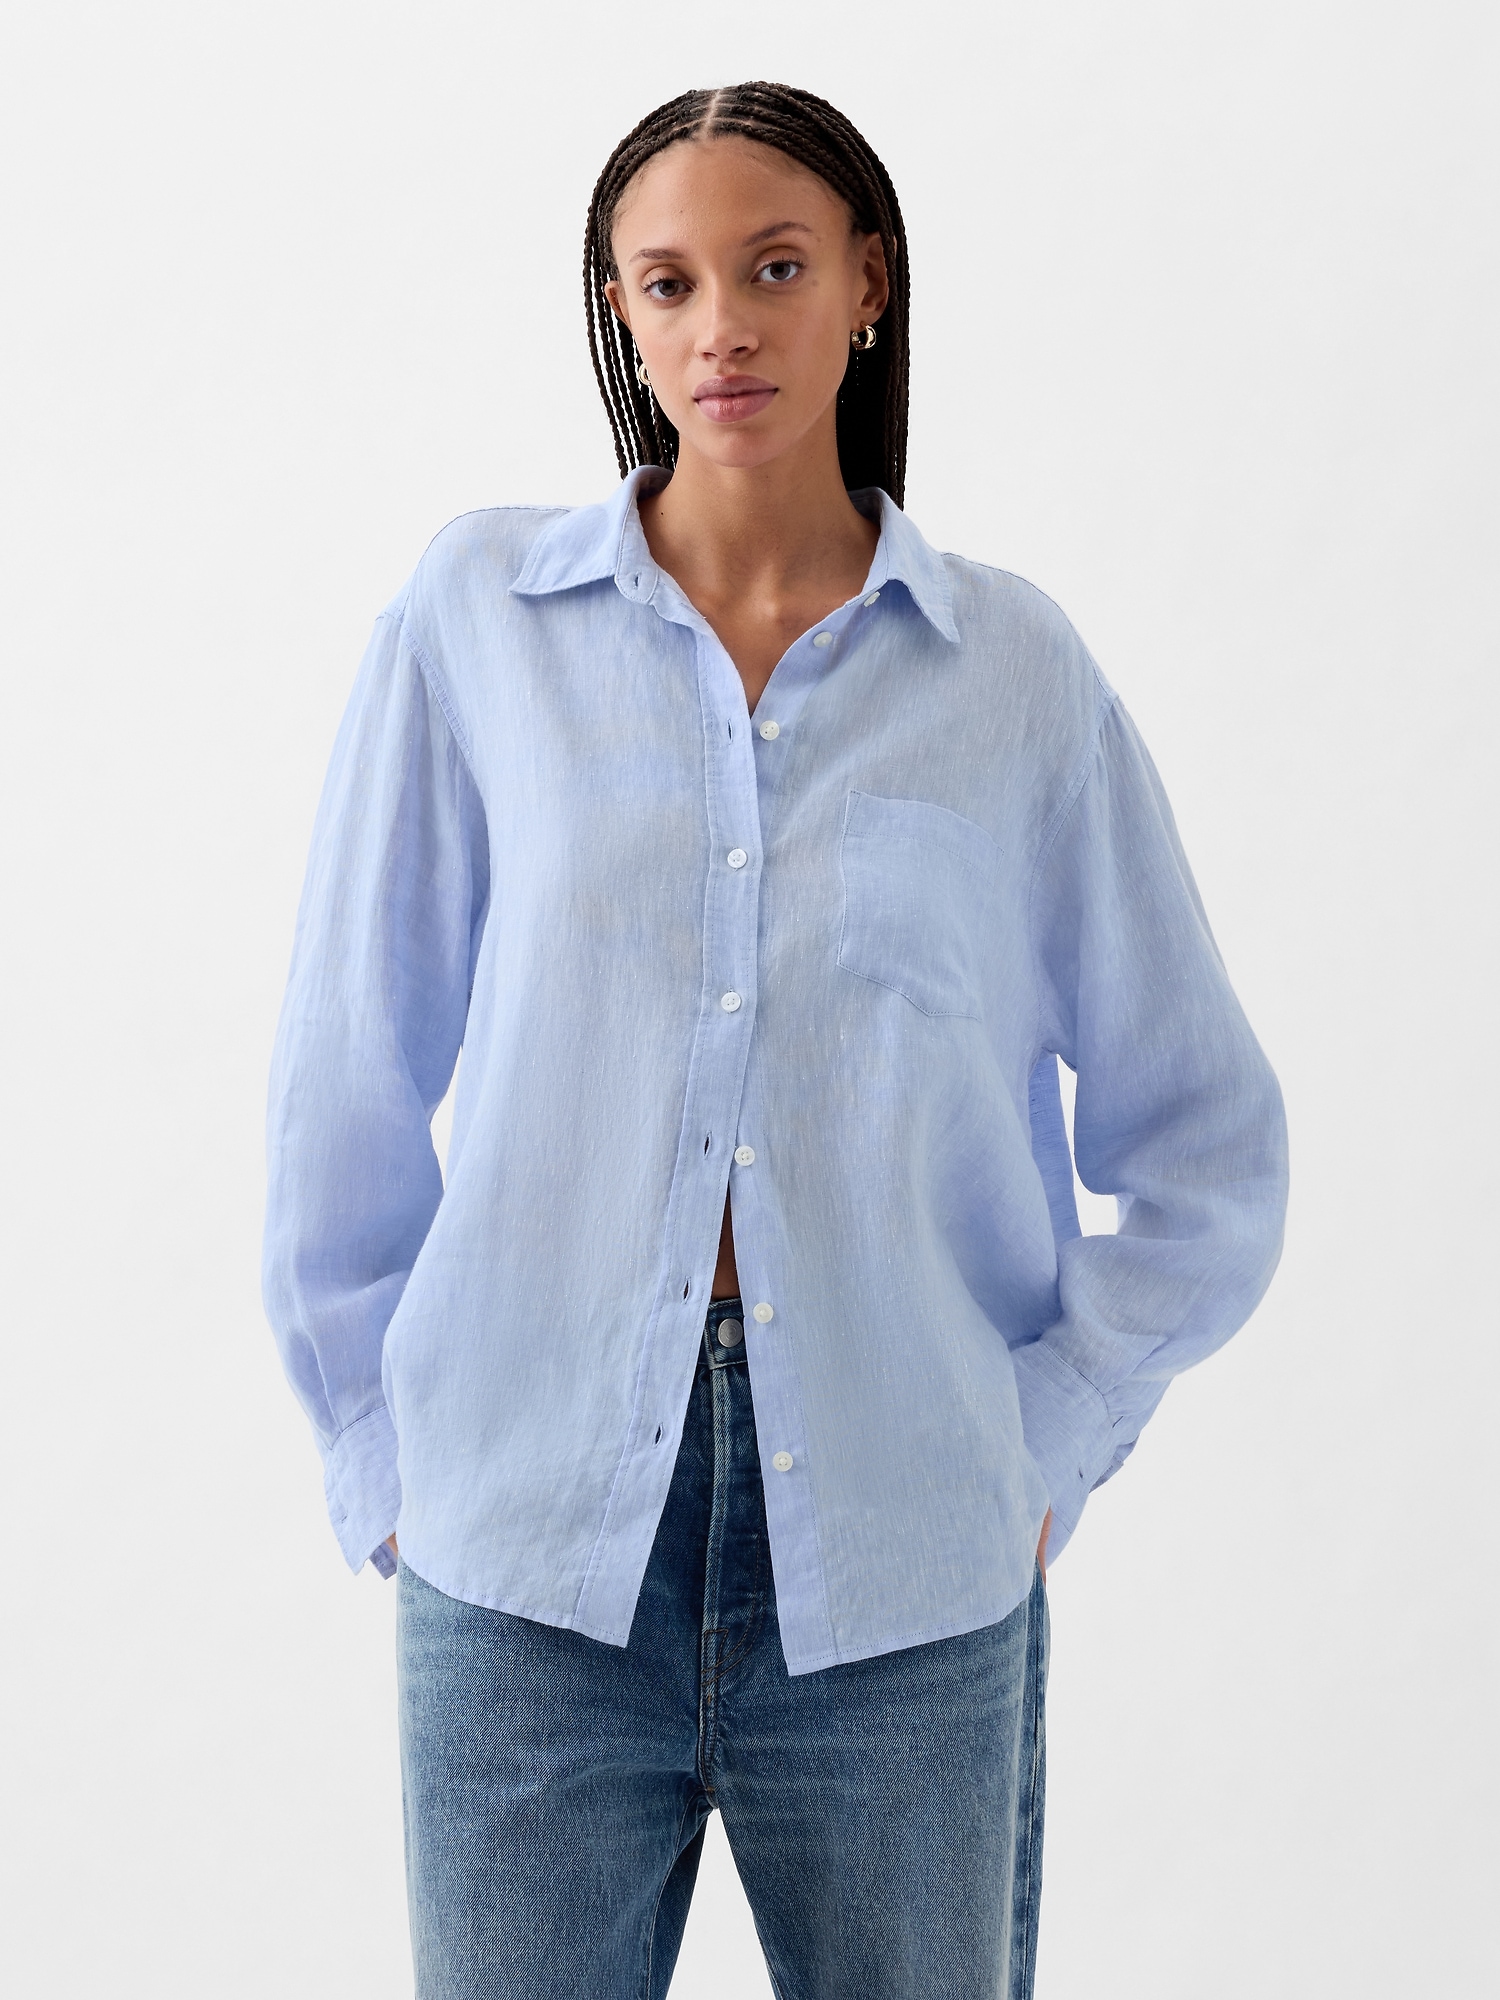 M-L. Vintage 100% Linen Shirt, Oversize Comfy Blouse. 